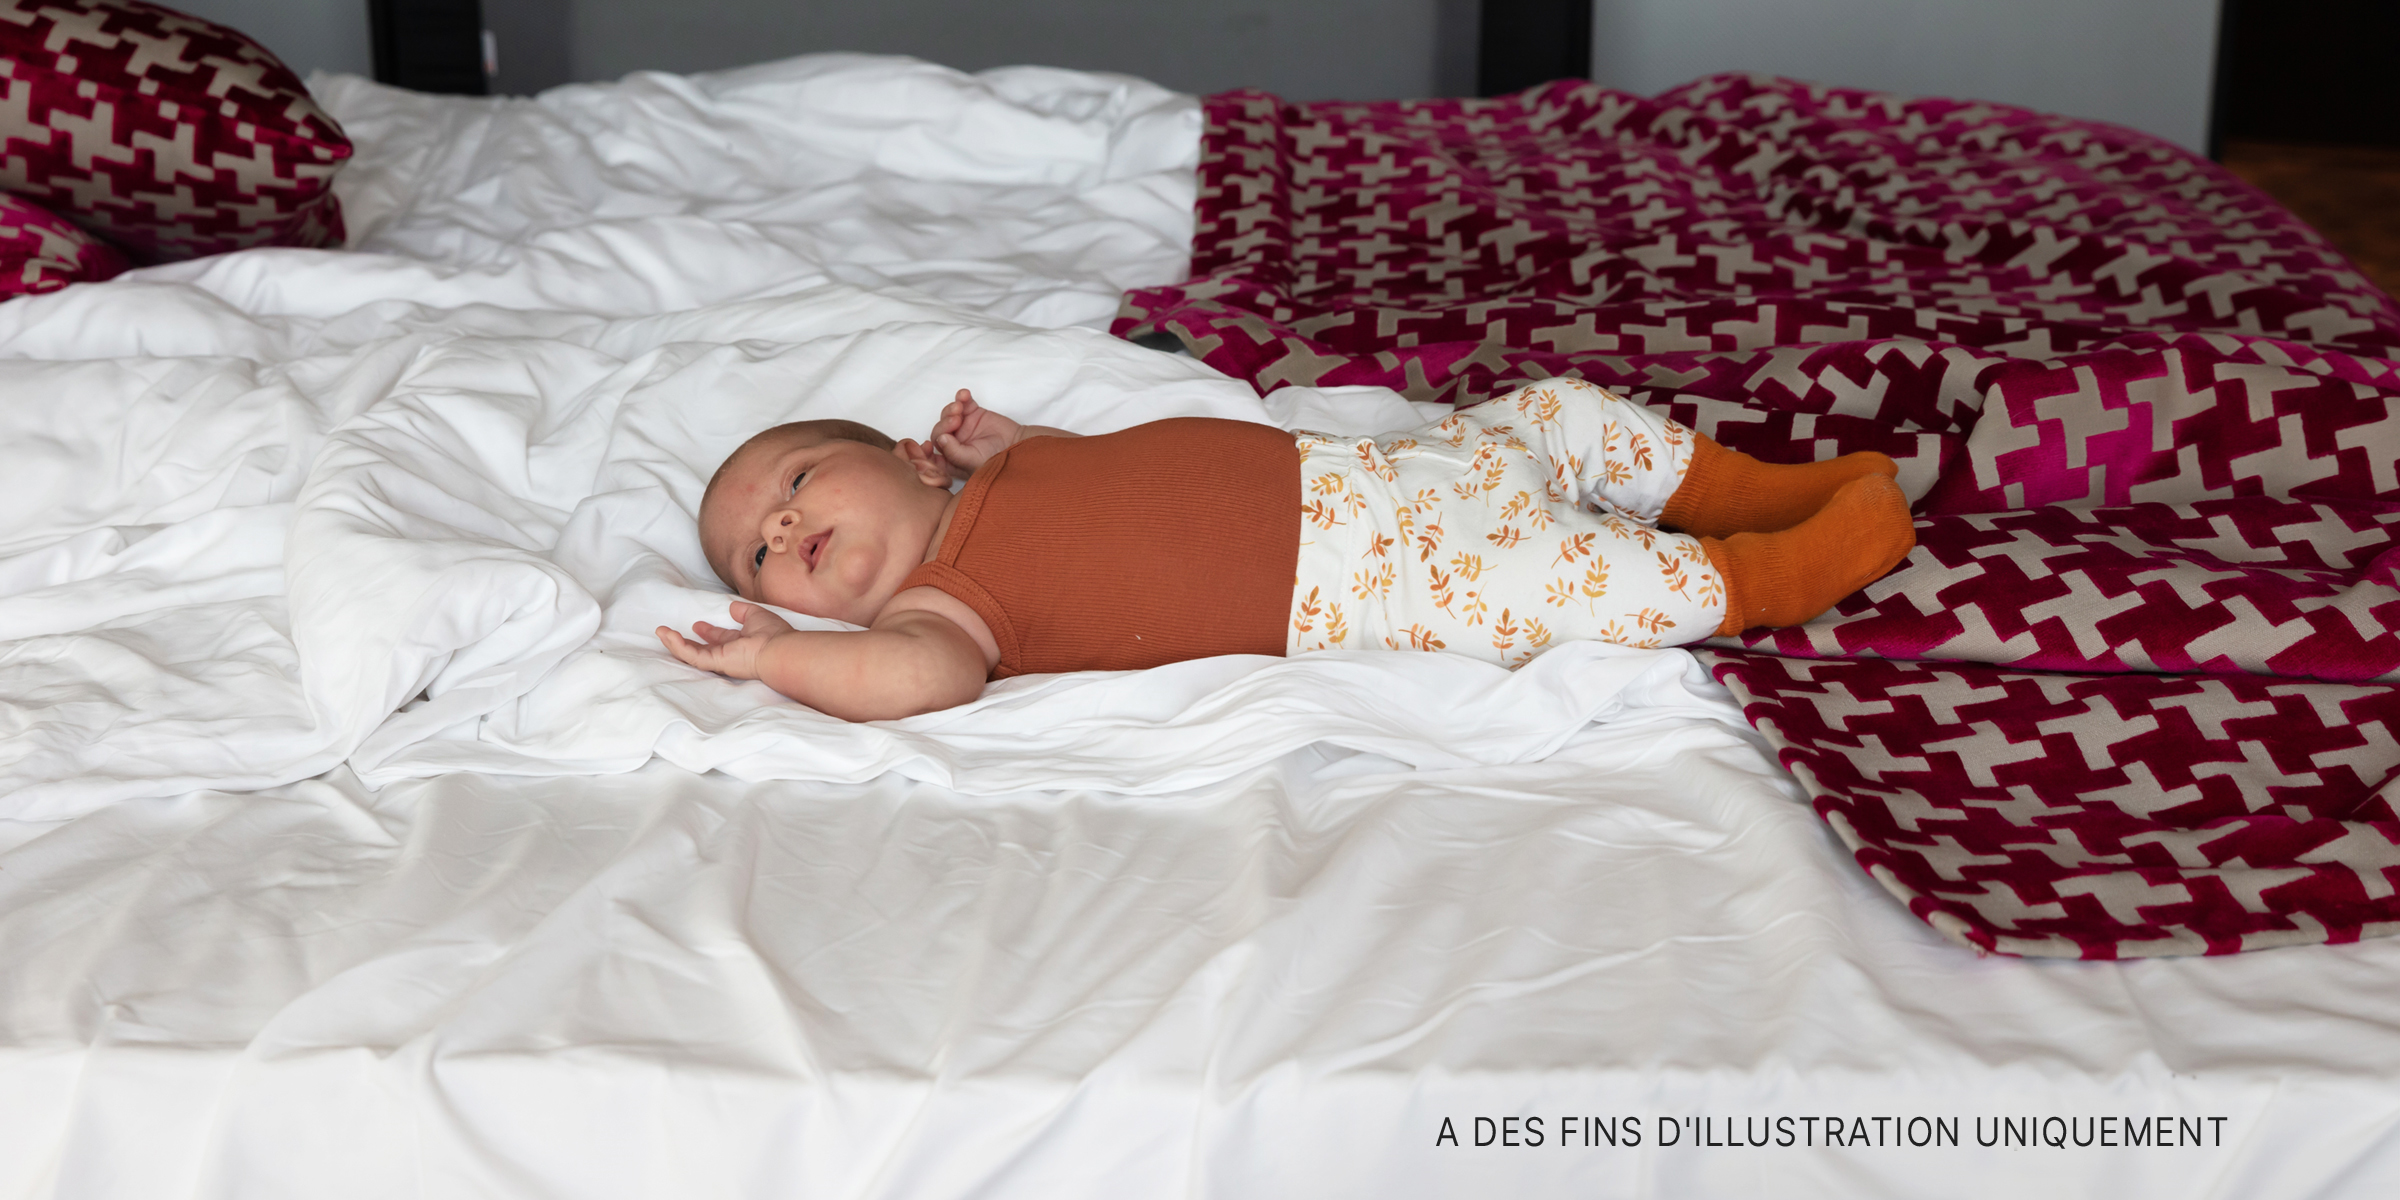 Un bébé couché sur un lit | Source : Shutterstock